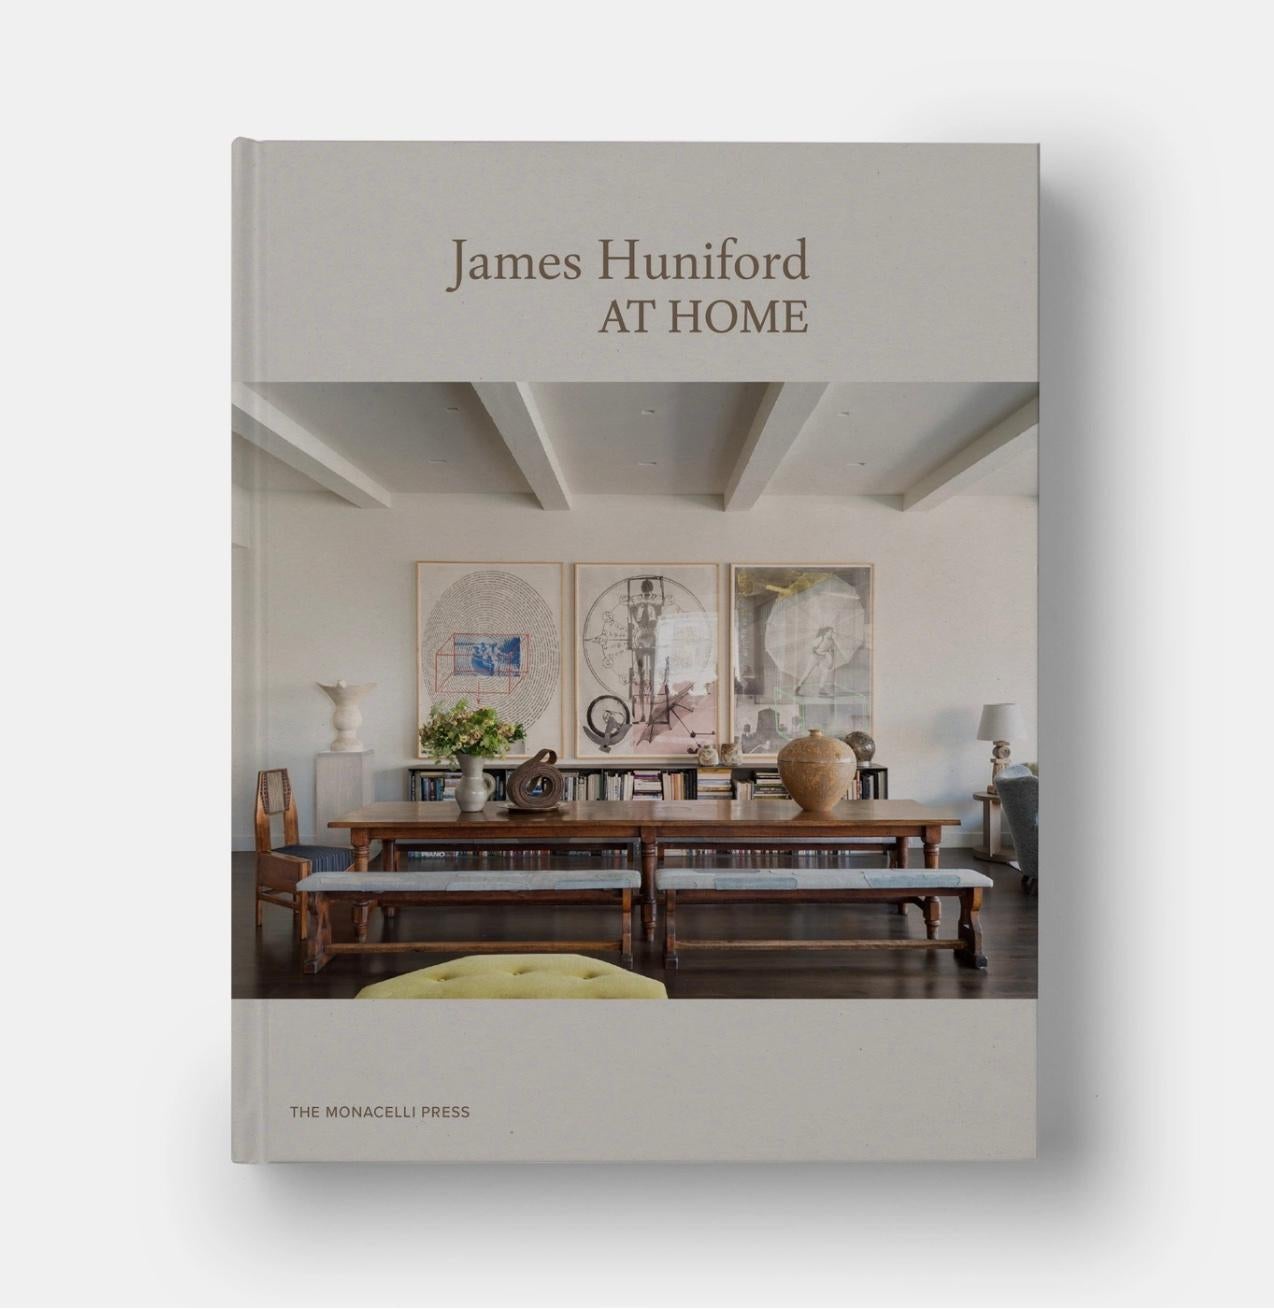 Exemplaire flambant neuf de James Huniford At Home, couverture rigide par Monacelli Press, 2020. Je viens de l'acheter lors d'une vente de clôture chez Barnes and Noble pour me rendre compte que je l'avais déjà ! Oups. Ma perte est votre gain. 

Il